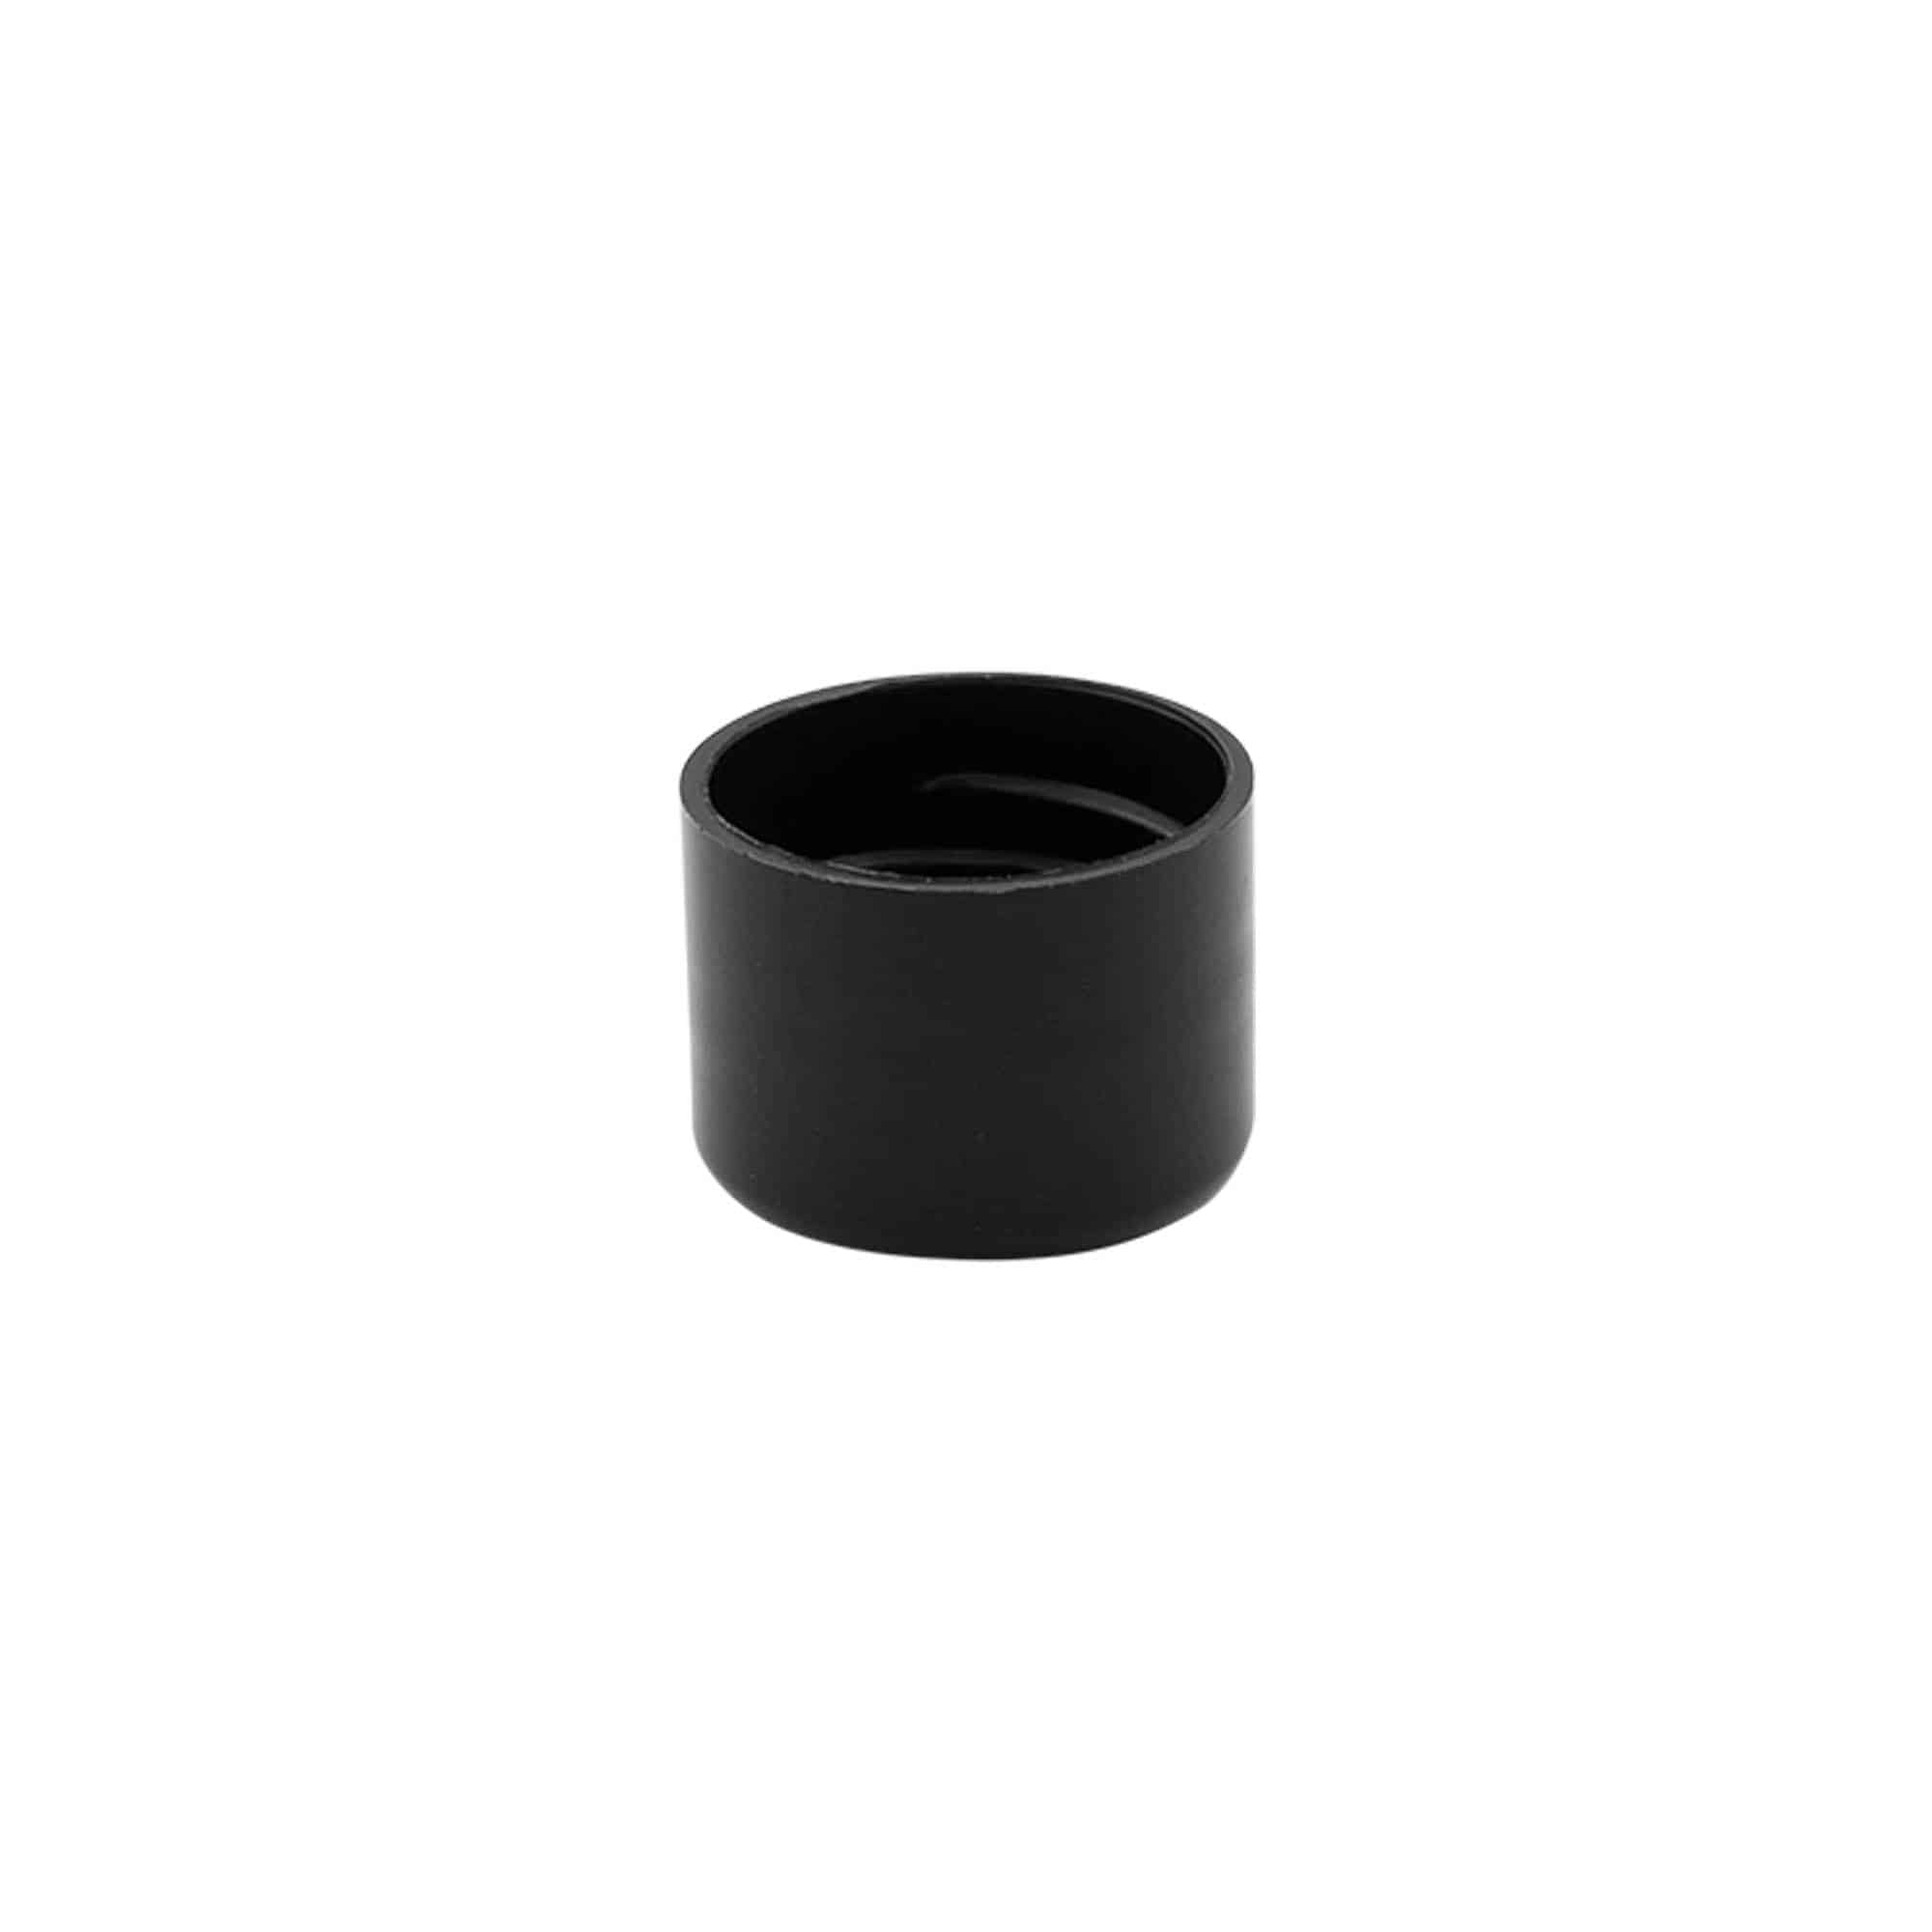 Schraubverschluss, PP-Kunststoff, schwarz, für Mündung: GPI 20/410